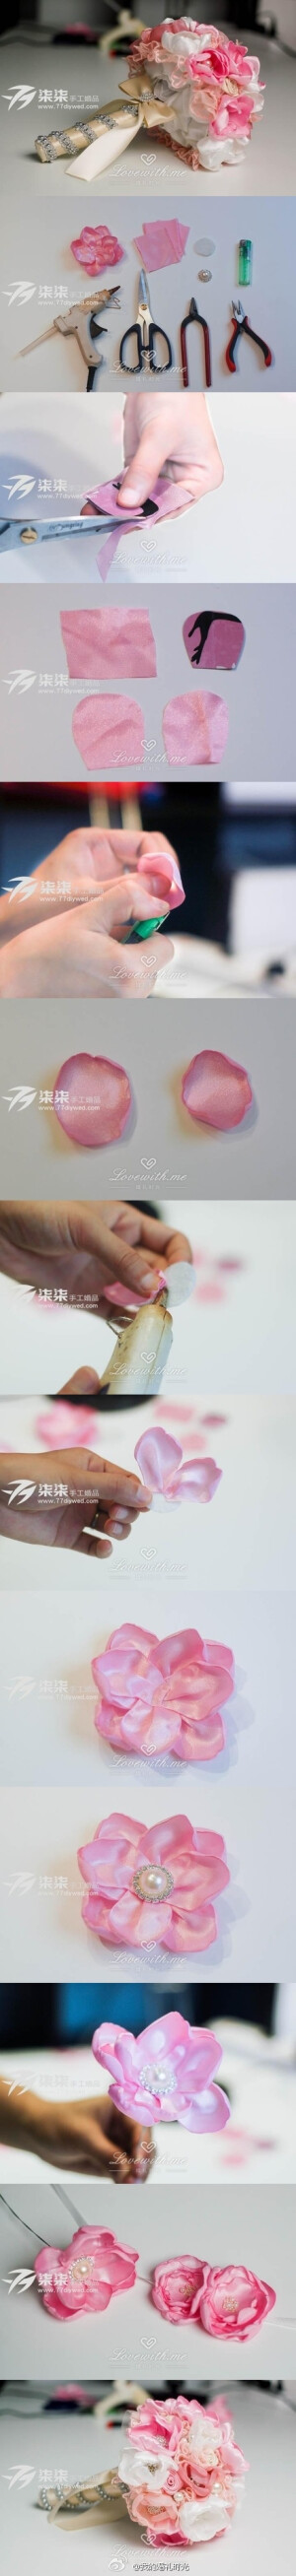 #DIY创意# 粉色牡丹花朵DIY教程，简单的几步就可以制作出一朵漂亮的牡丹花朵。【by@柒柒手工婚品】http://www.lovewith.me/share/detail/27193/all